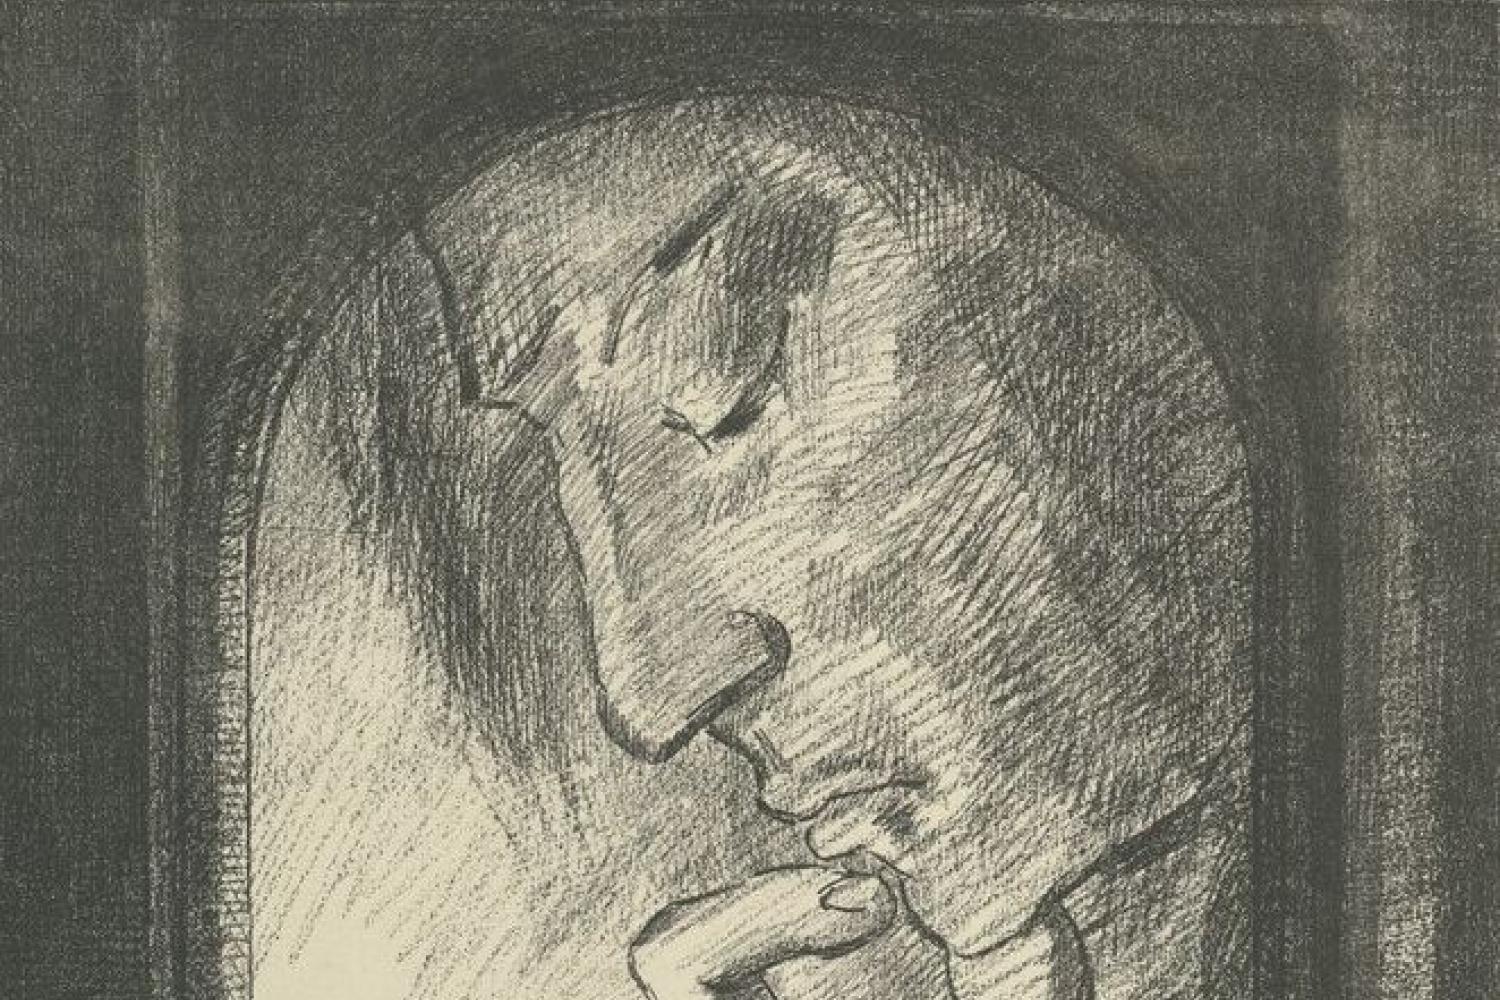 Lumière, estampe d’Odilon Redon, 1893 BnF, Estampes et photographie -  - BnF